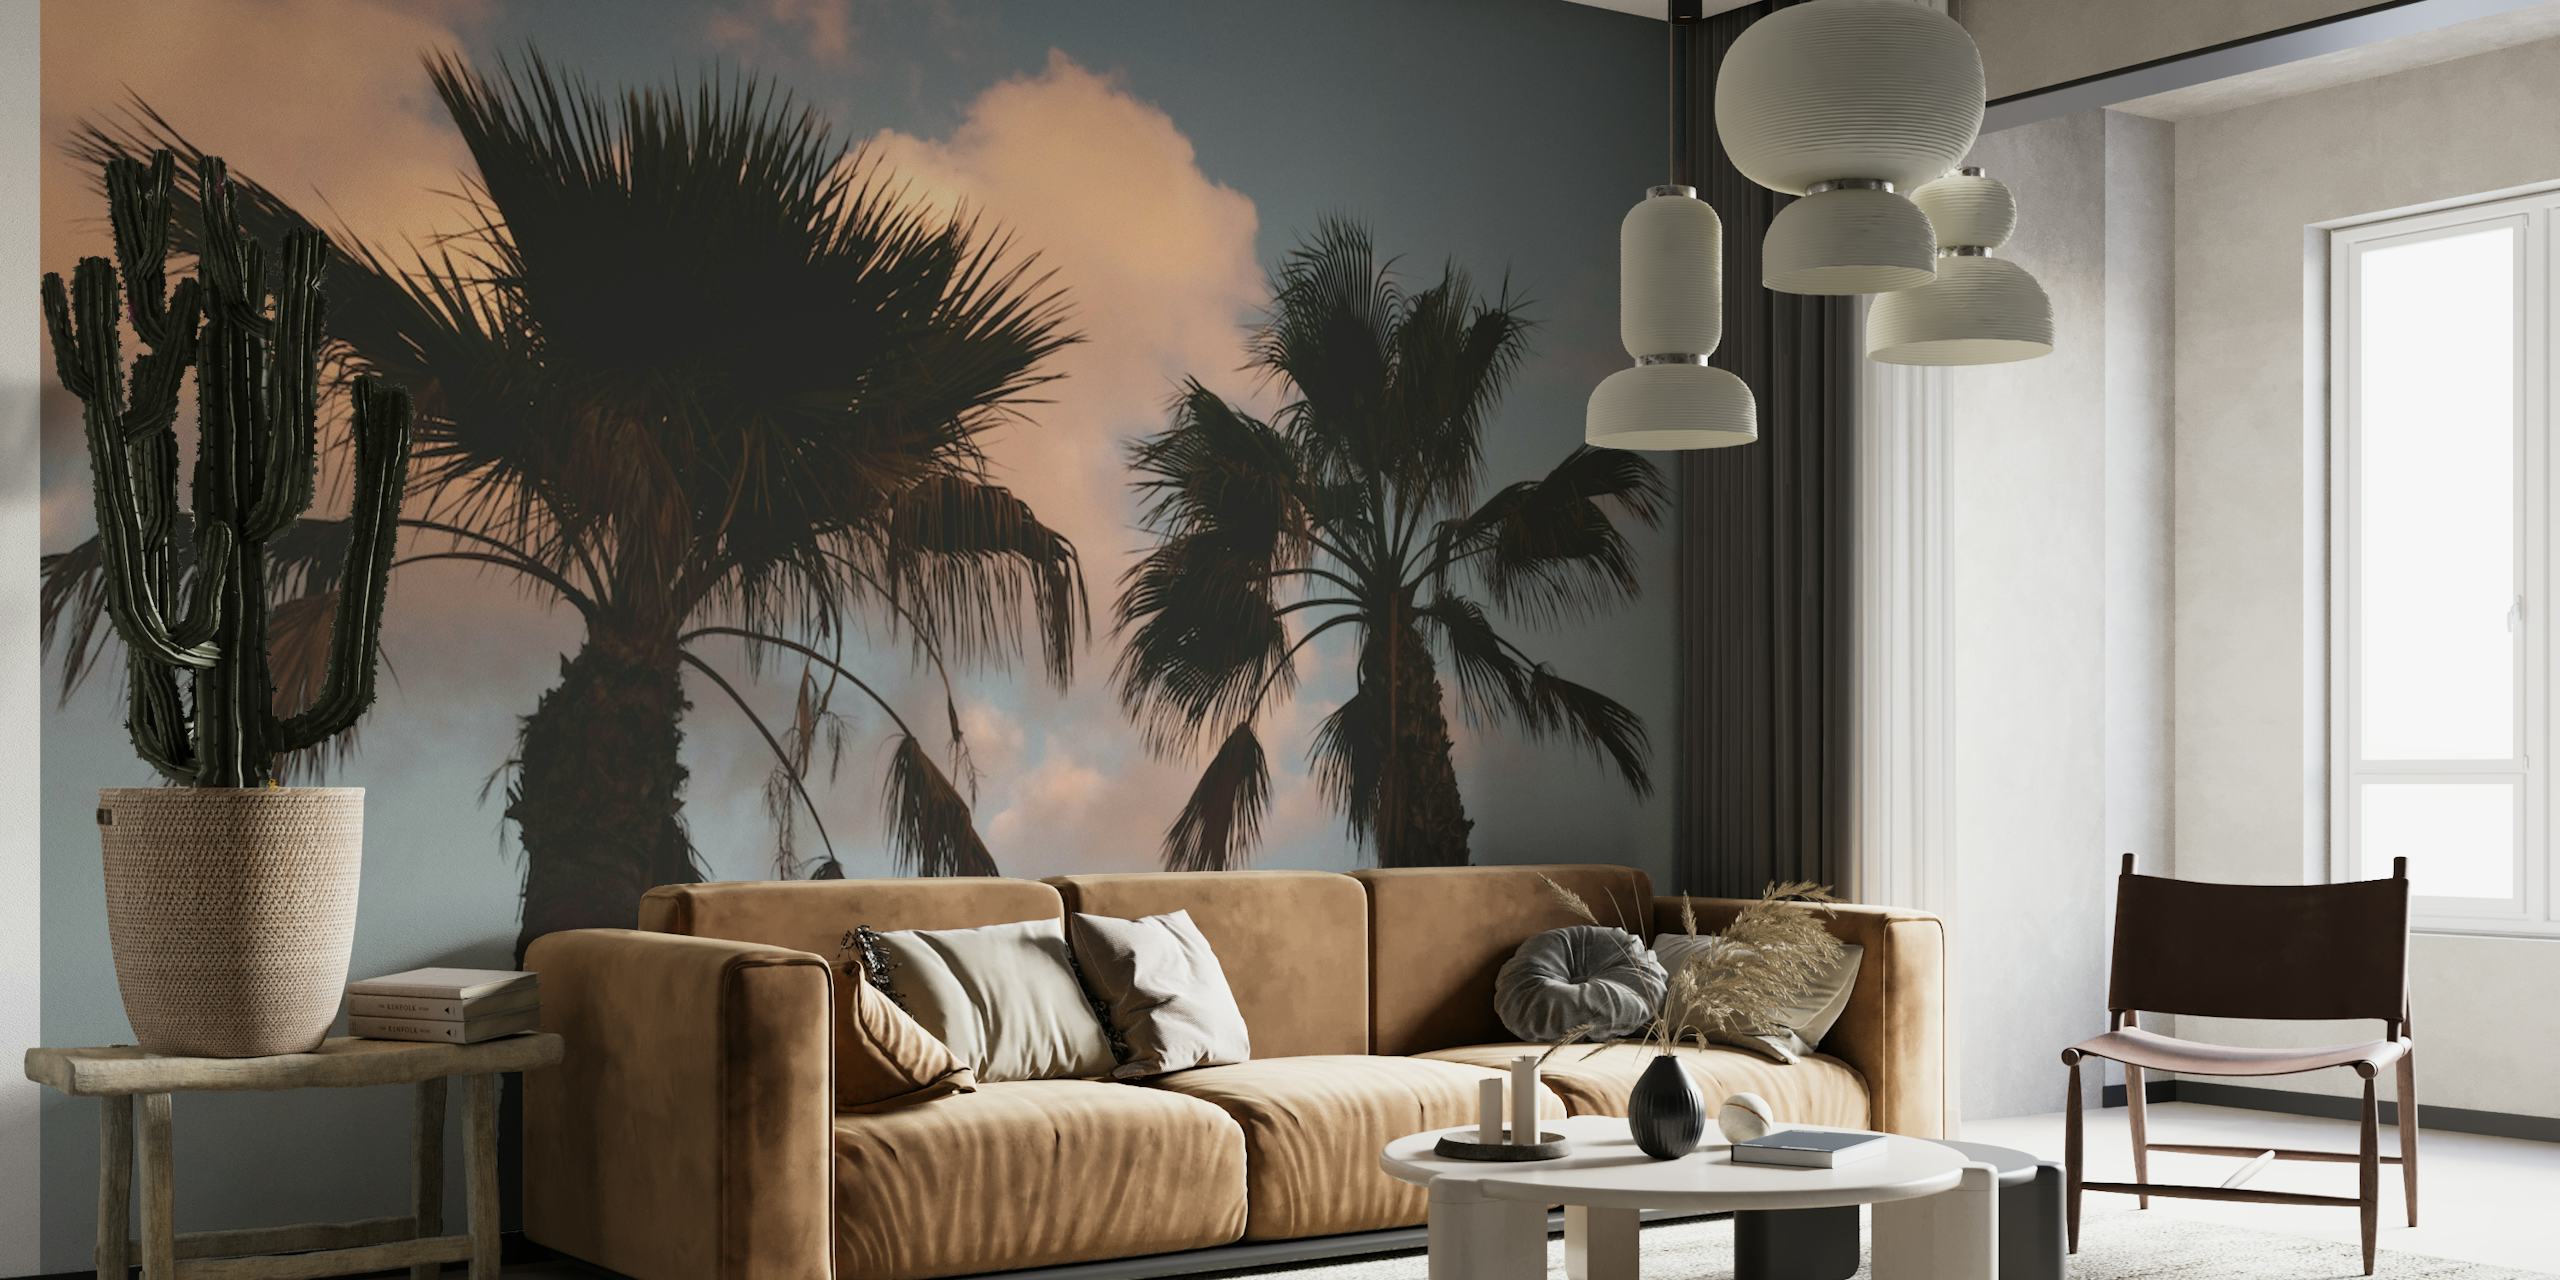 Sunset Palm Trees 1 papel pintado